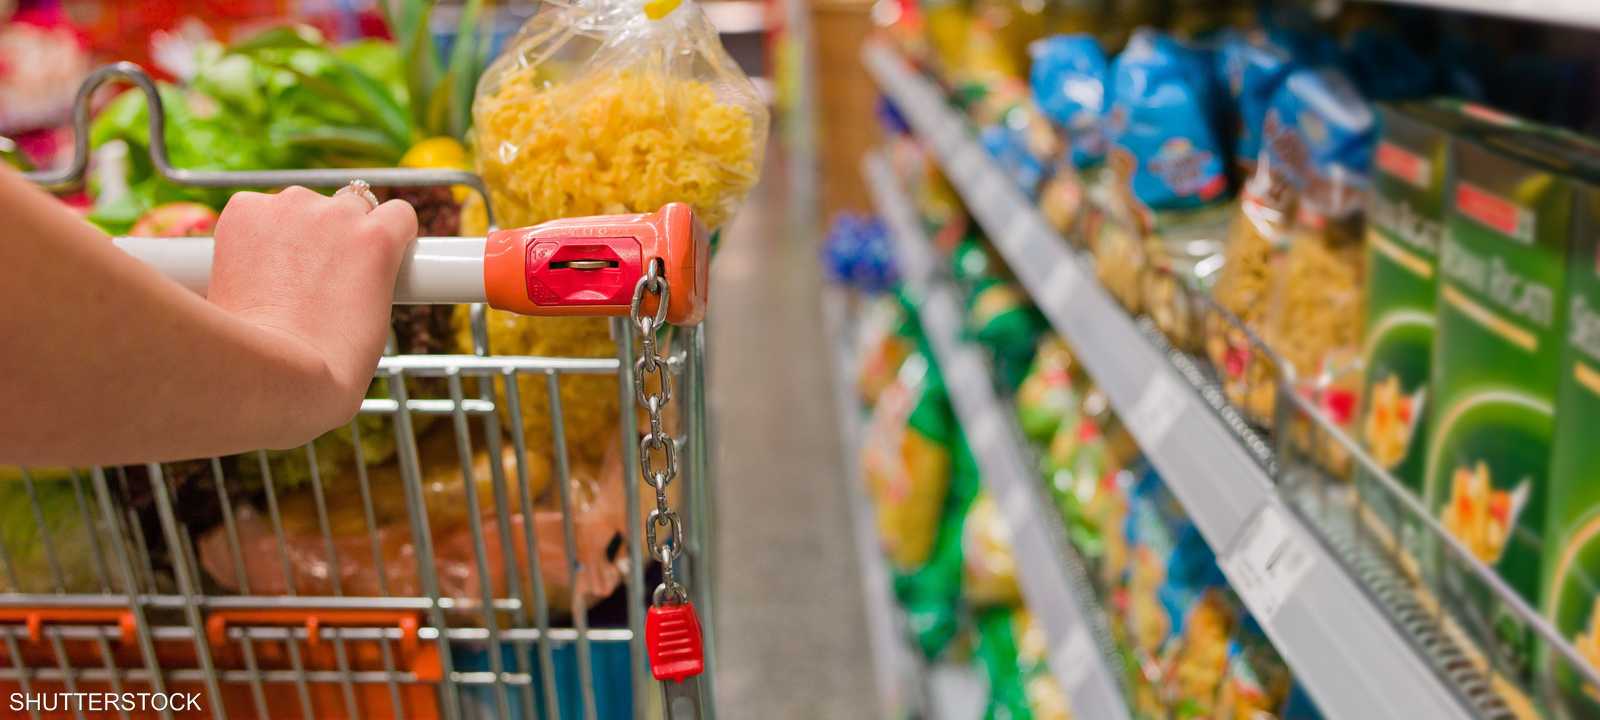 تسوق المواد الغذائية في السوبر ماركت - التضخم